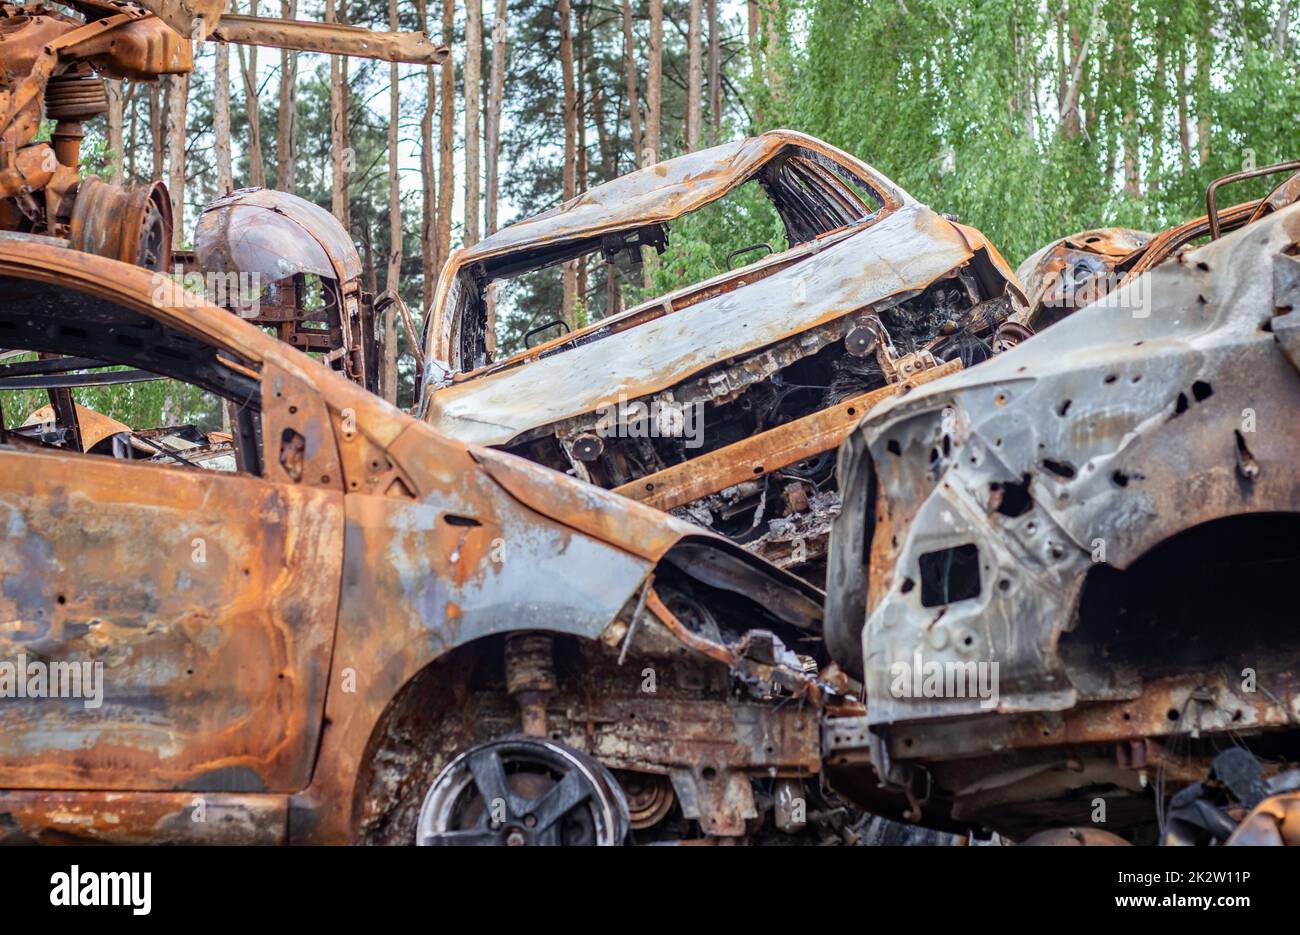 Ein Blick auf abgebrannte Autos nach Raketenangriffen des russischen Militärs. Krieg Russlands gegen die Ukraine. Ziviles Fahrzeug nach dem Brand. Friedhof der Autos in der Stadt Irpin. Rostiger Haufen Metall. Stockfoto